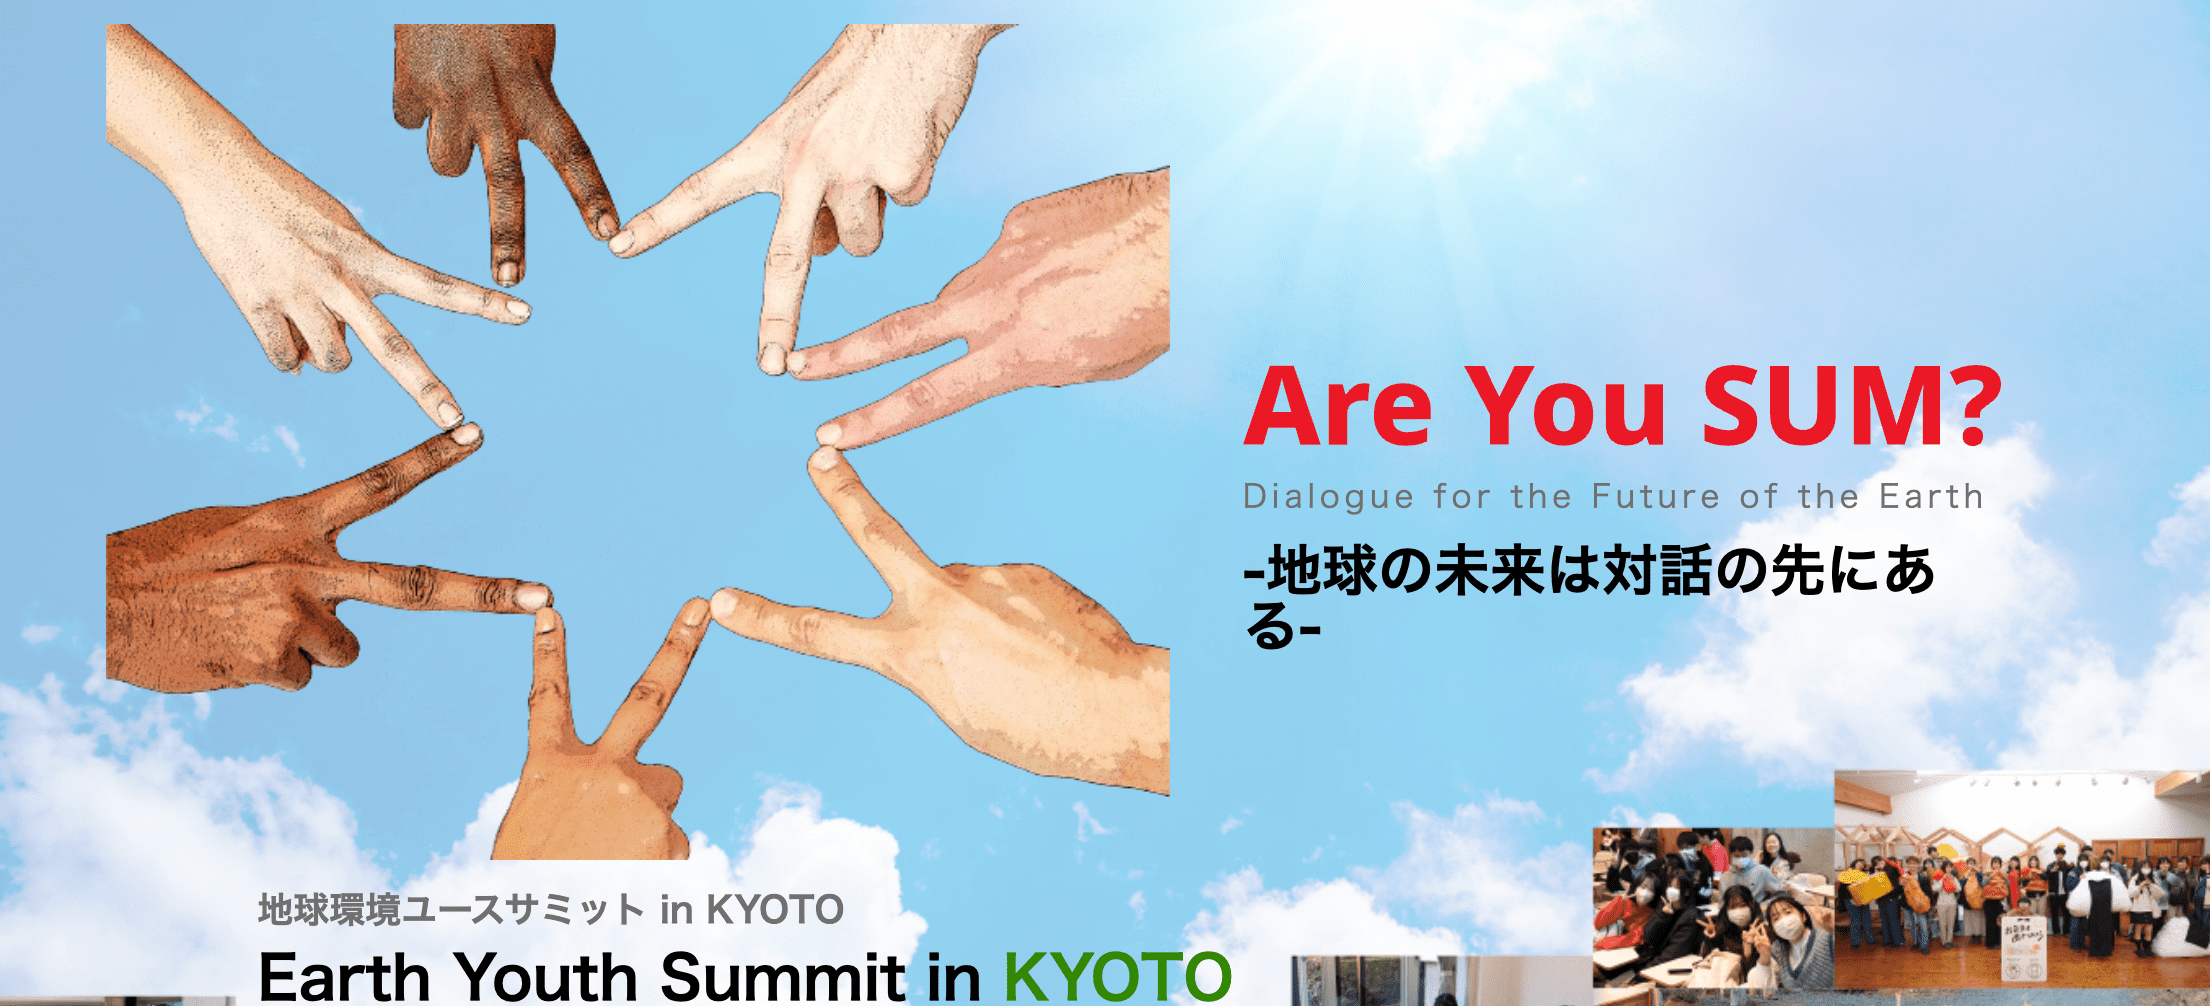 地球環境ユースサミット in KYOTO Earth Youth Summit in KYOTO Are You SUM? Dialogue for the Future of the Earth -地球の未来は対話の先にある-